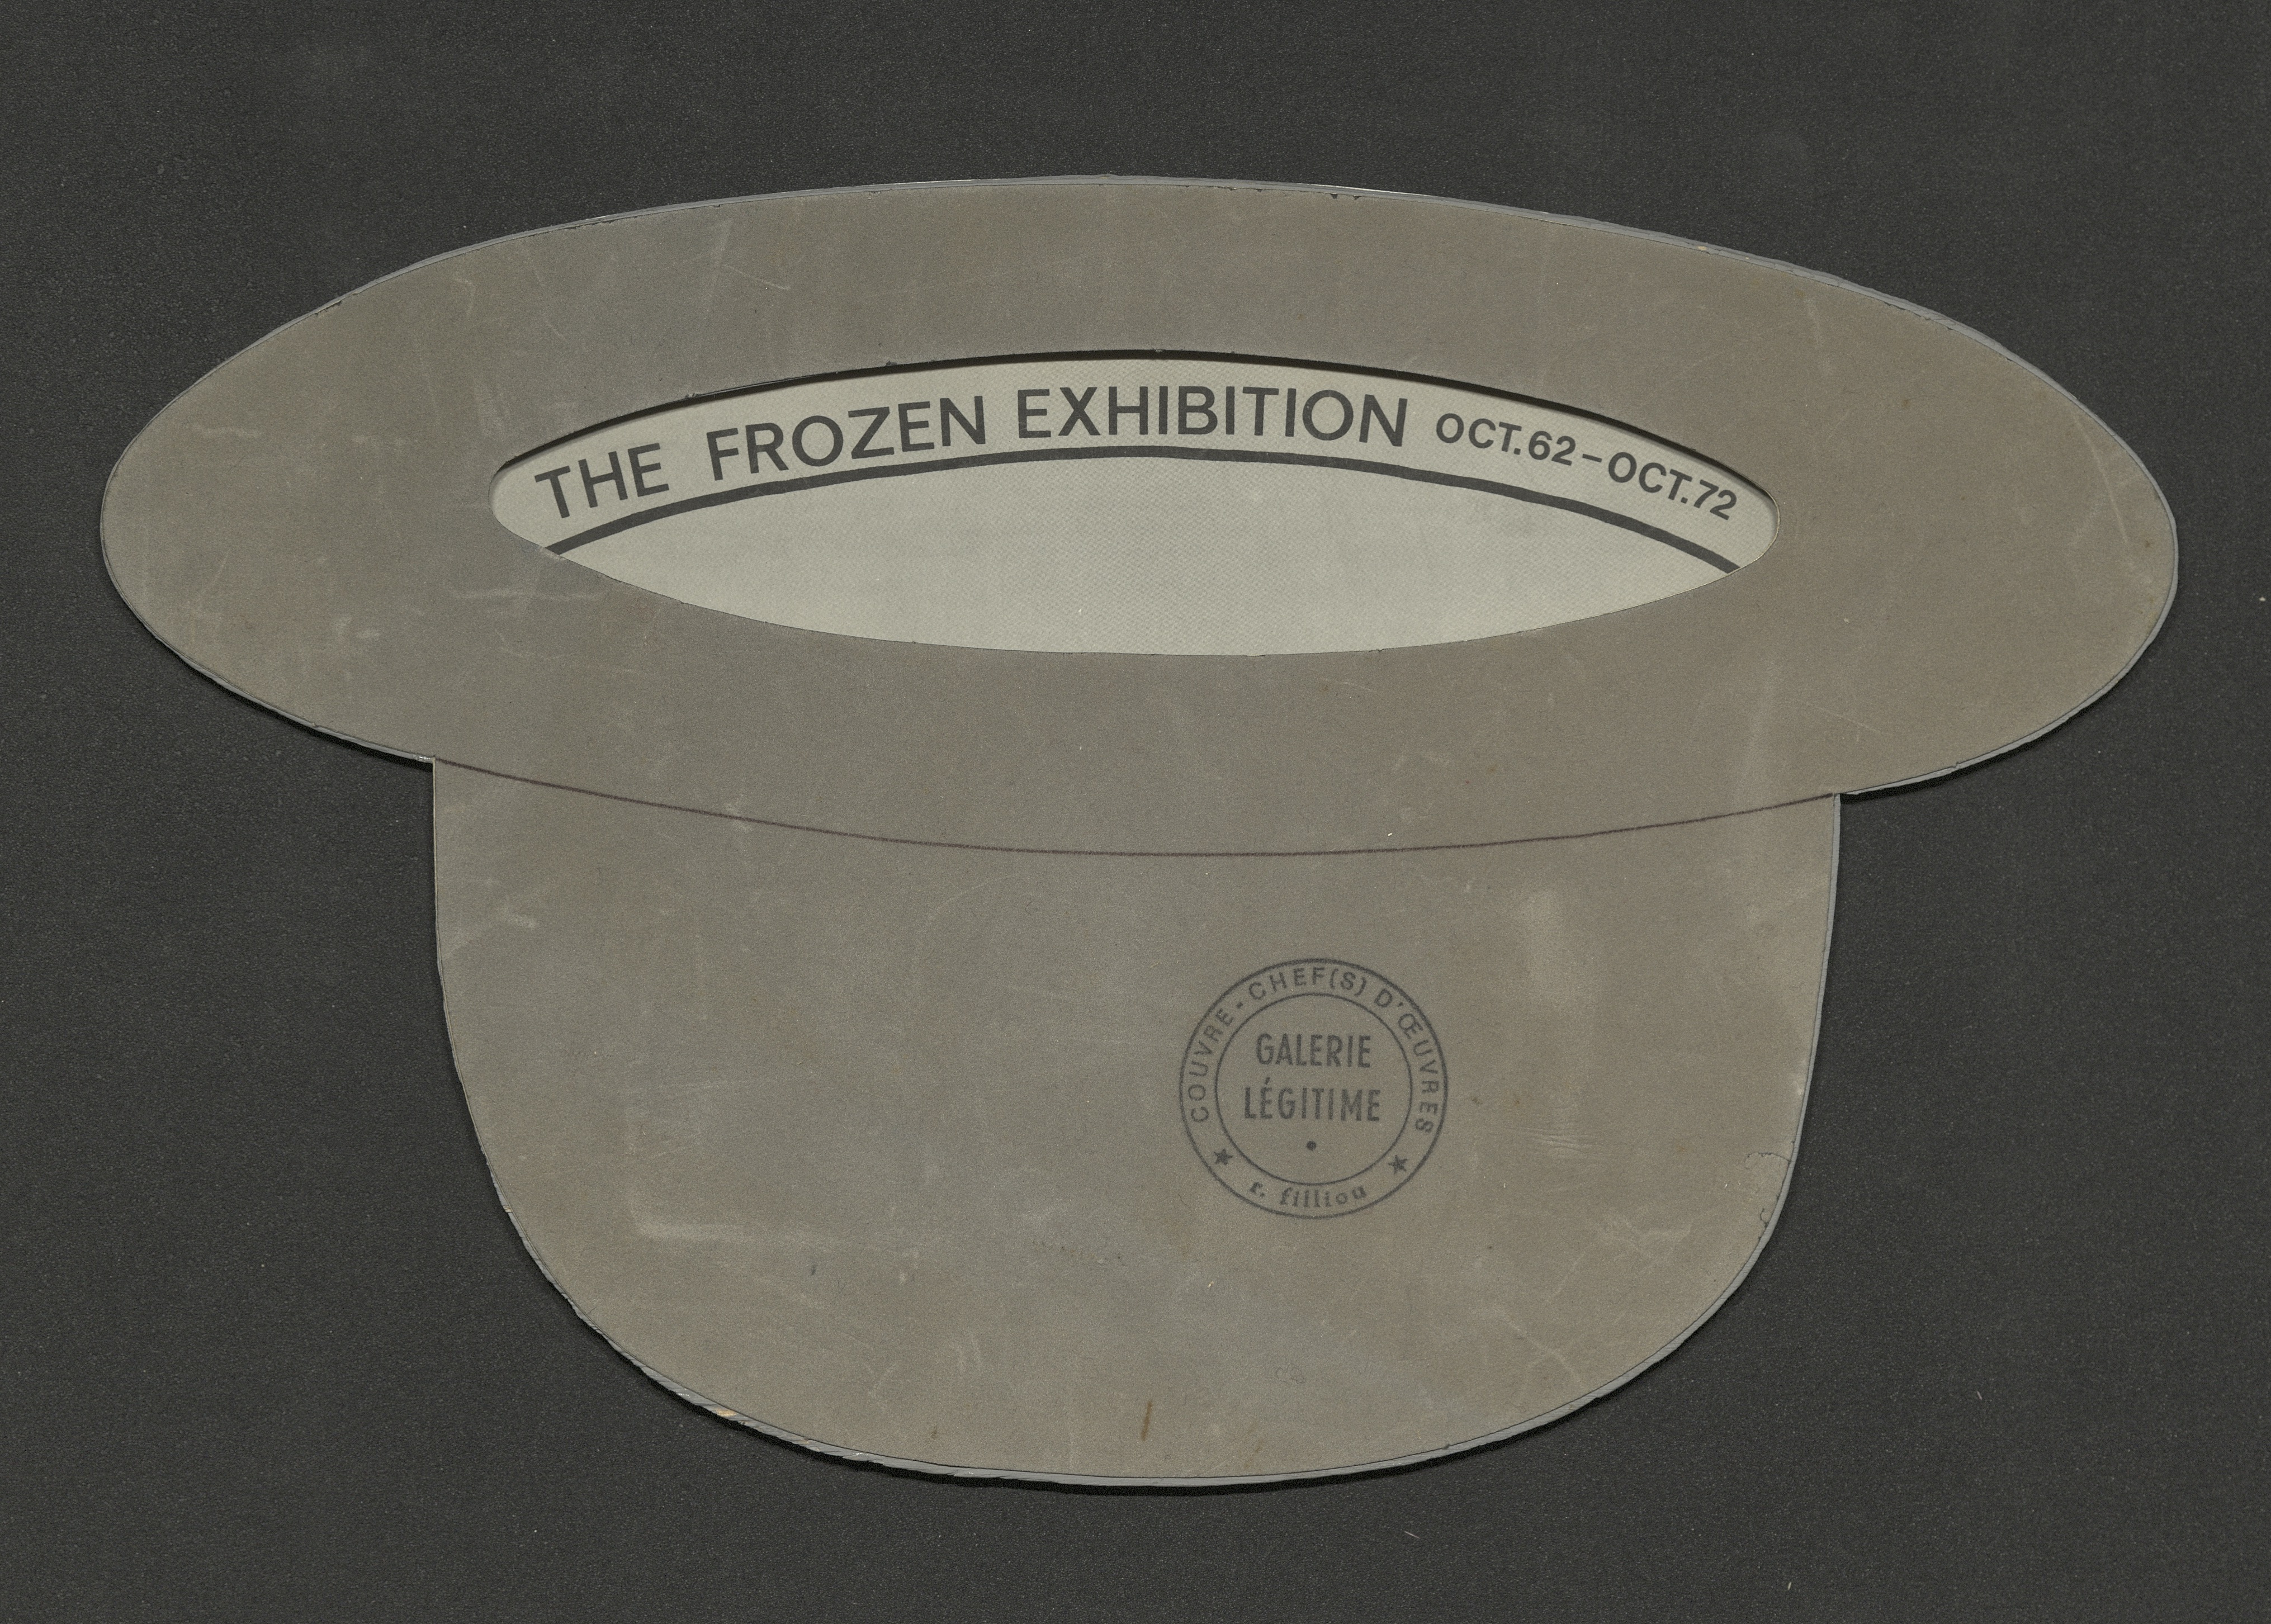 The Frozen Exhibition, Galerie Légitime London 1962/1972 (Edition) by Robert Filliou; Archiv der Avantgarden, Staatliche Kunstsammlungen Dresden